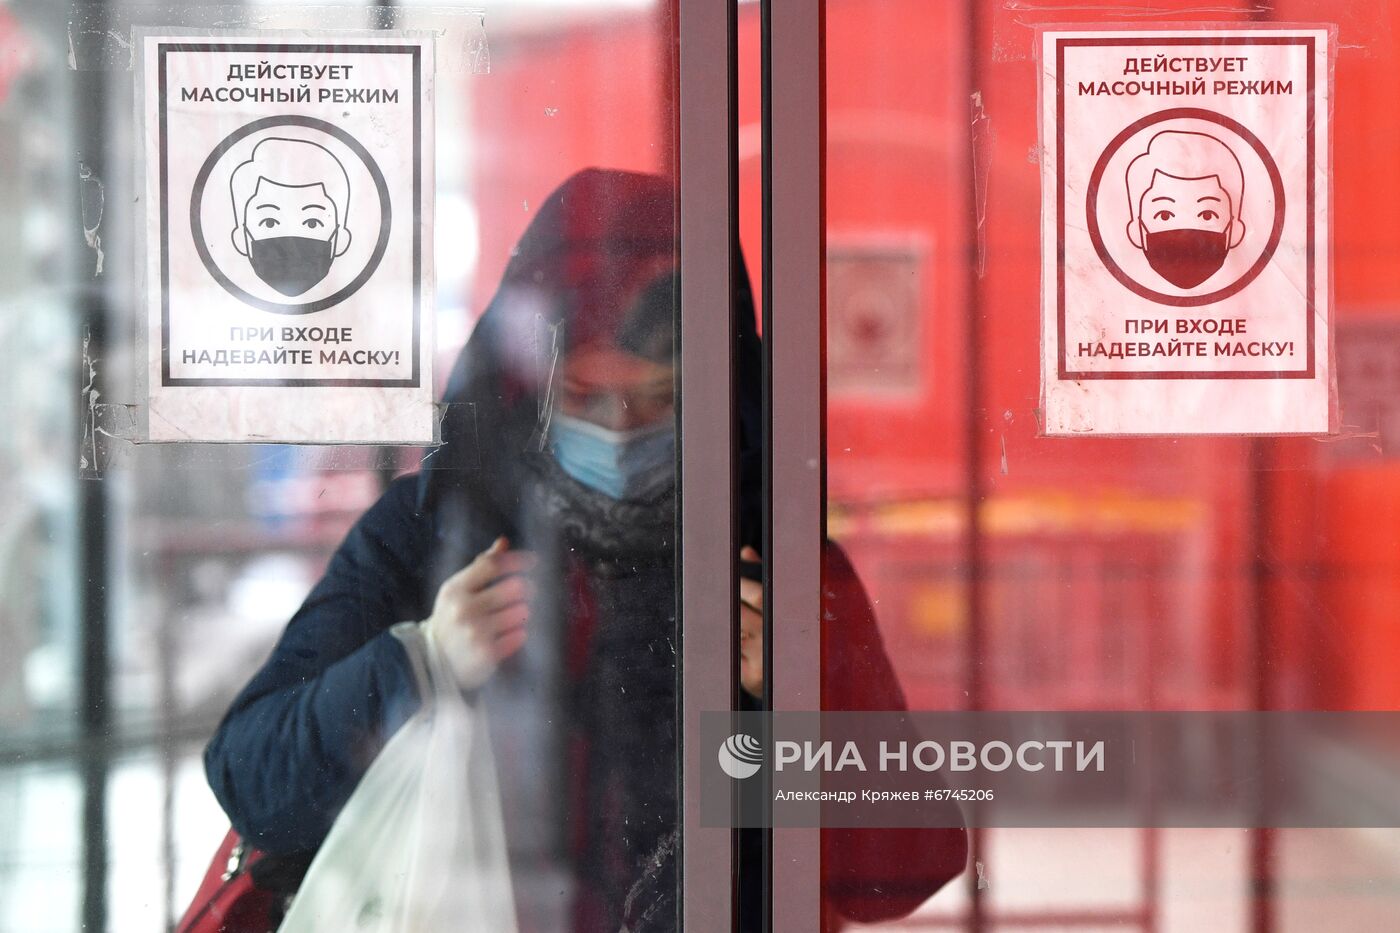 Жизнь во время пандемии в Новосибирске